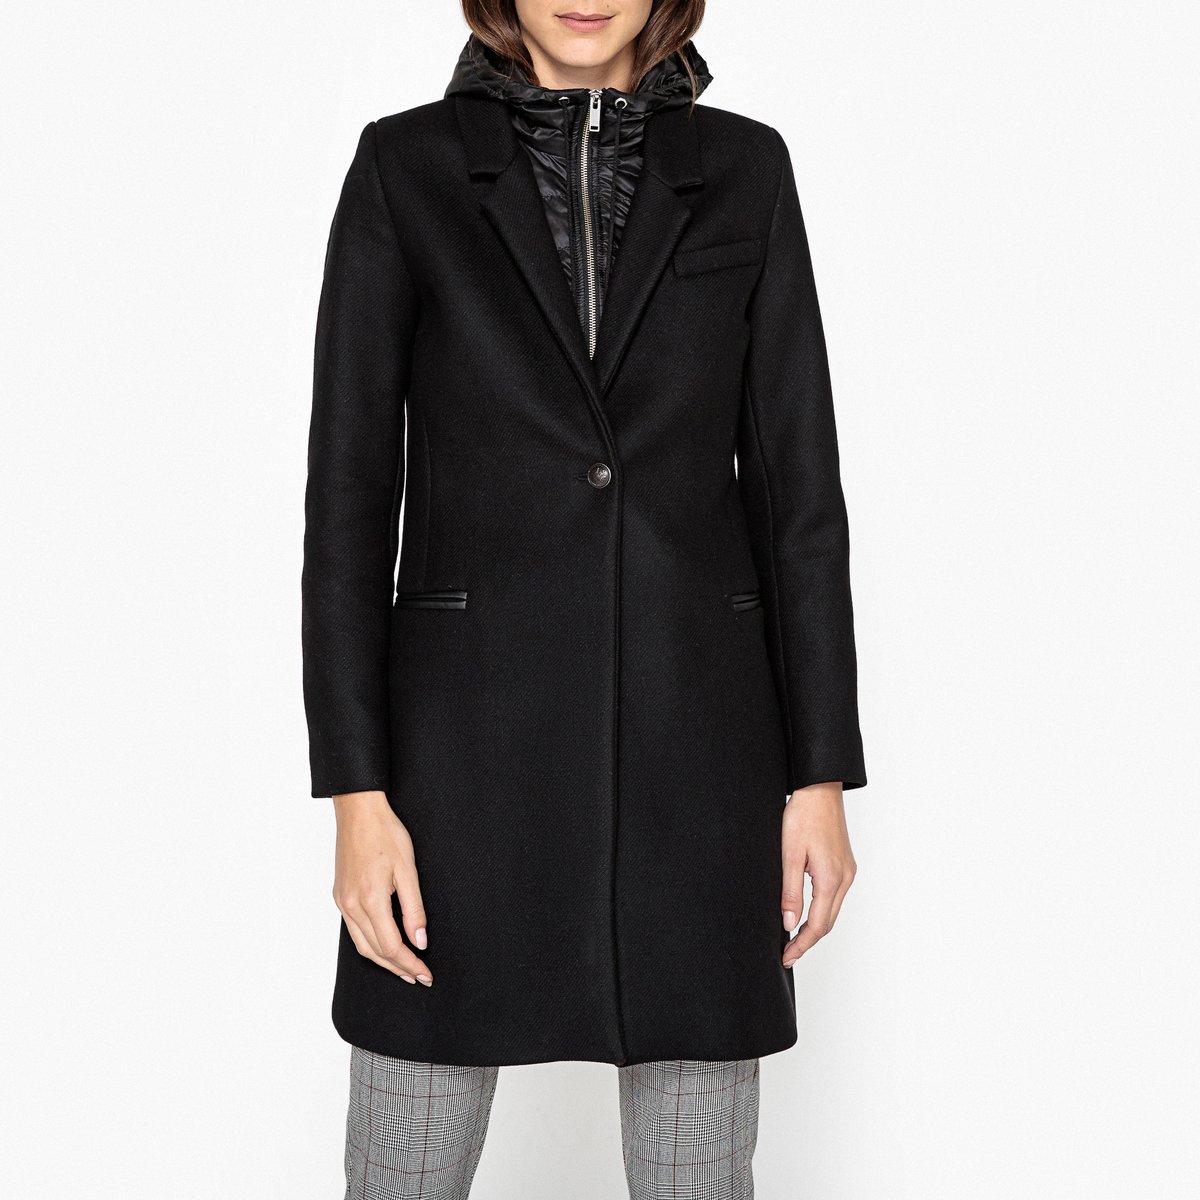 Пальто LaRedoute На подкладке с капюшоном из полушерстяной ткани 40 (FR) - 46 (RUS) черный, размер 40 (FR) - 46 (RUS)